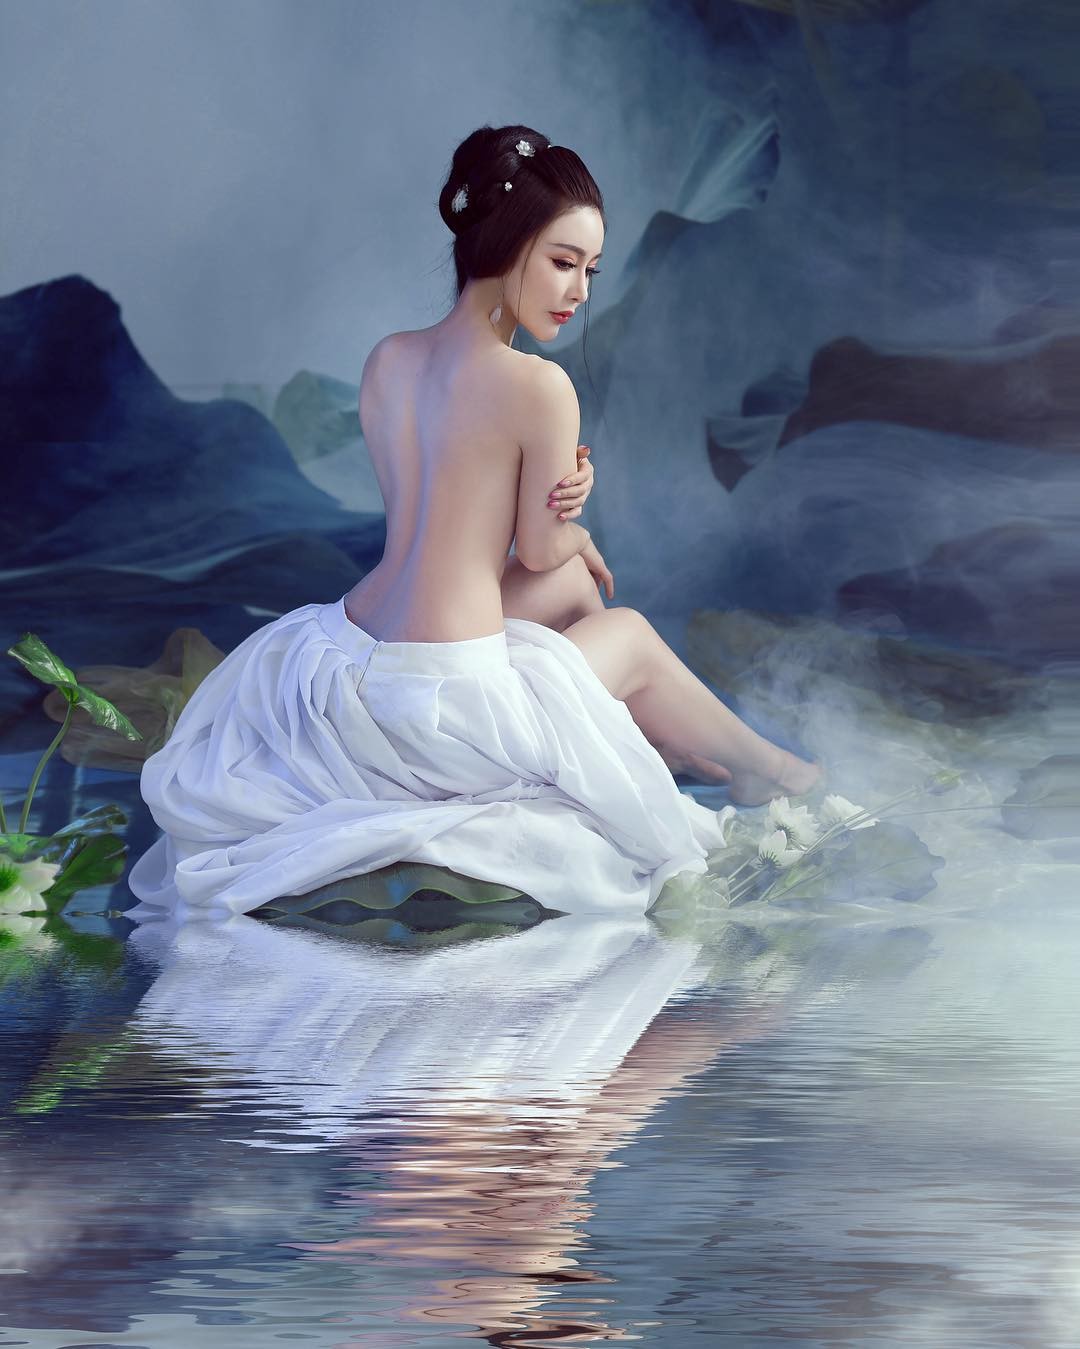 Yuan Herong Nude TheFappening.Pro 31 - Yuan Herong Nude (118 Photos And Videos)